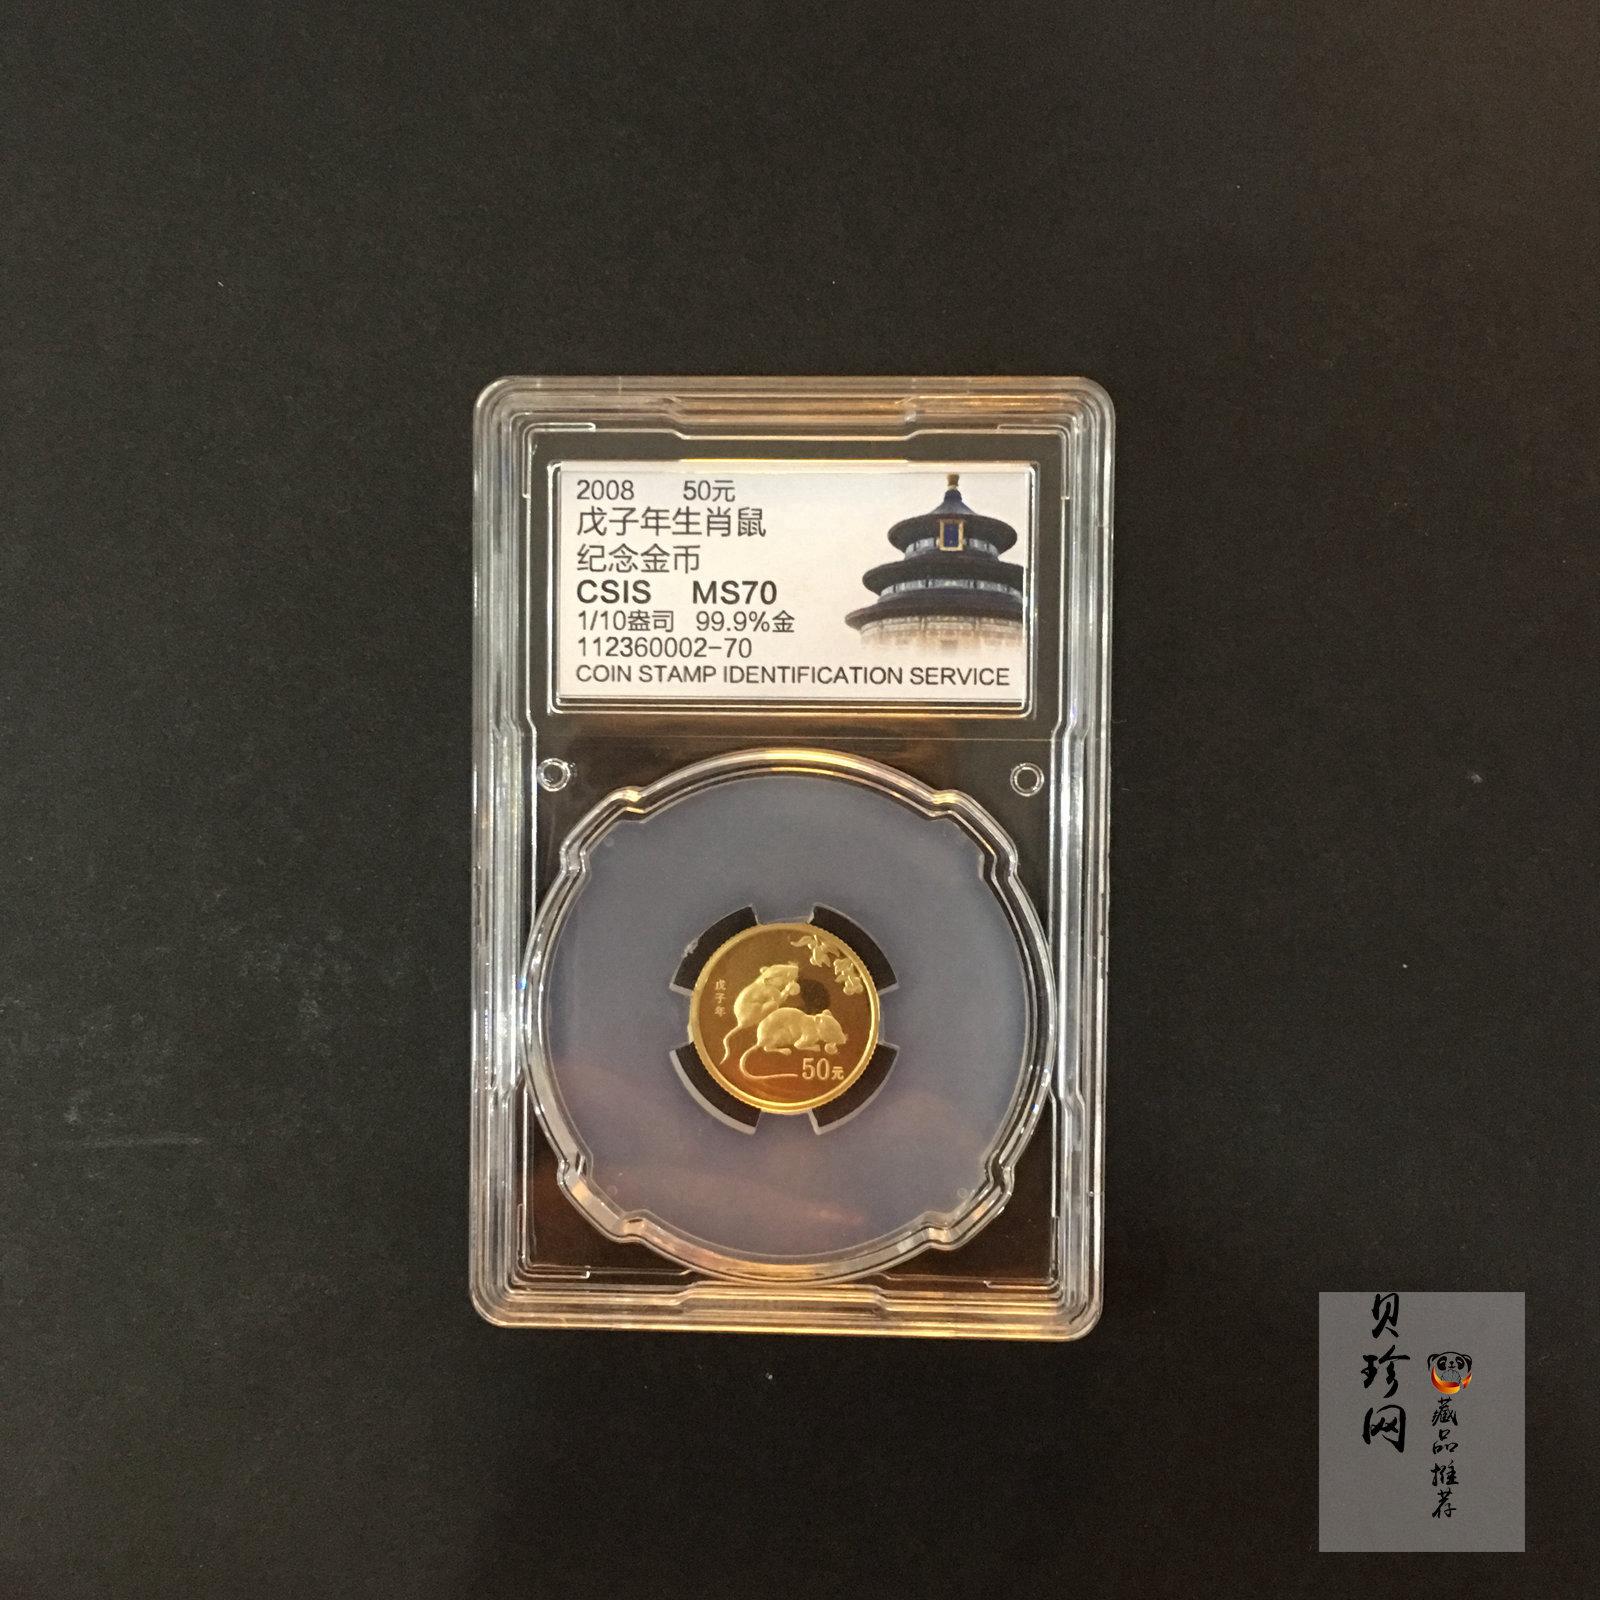 【081212】2008年戊子鼠年生肖1/10盎司精制金币